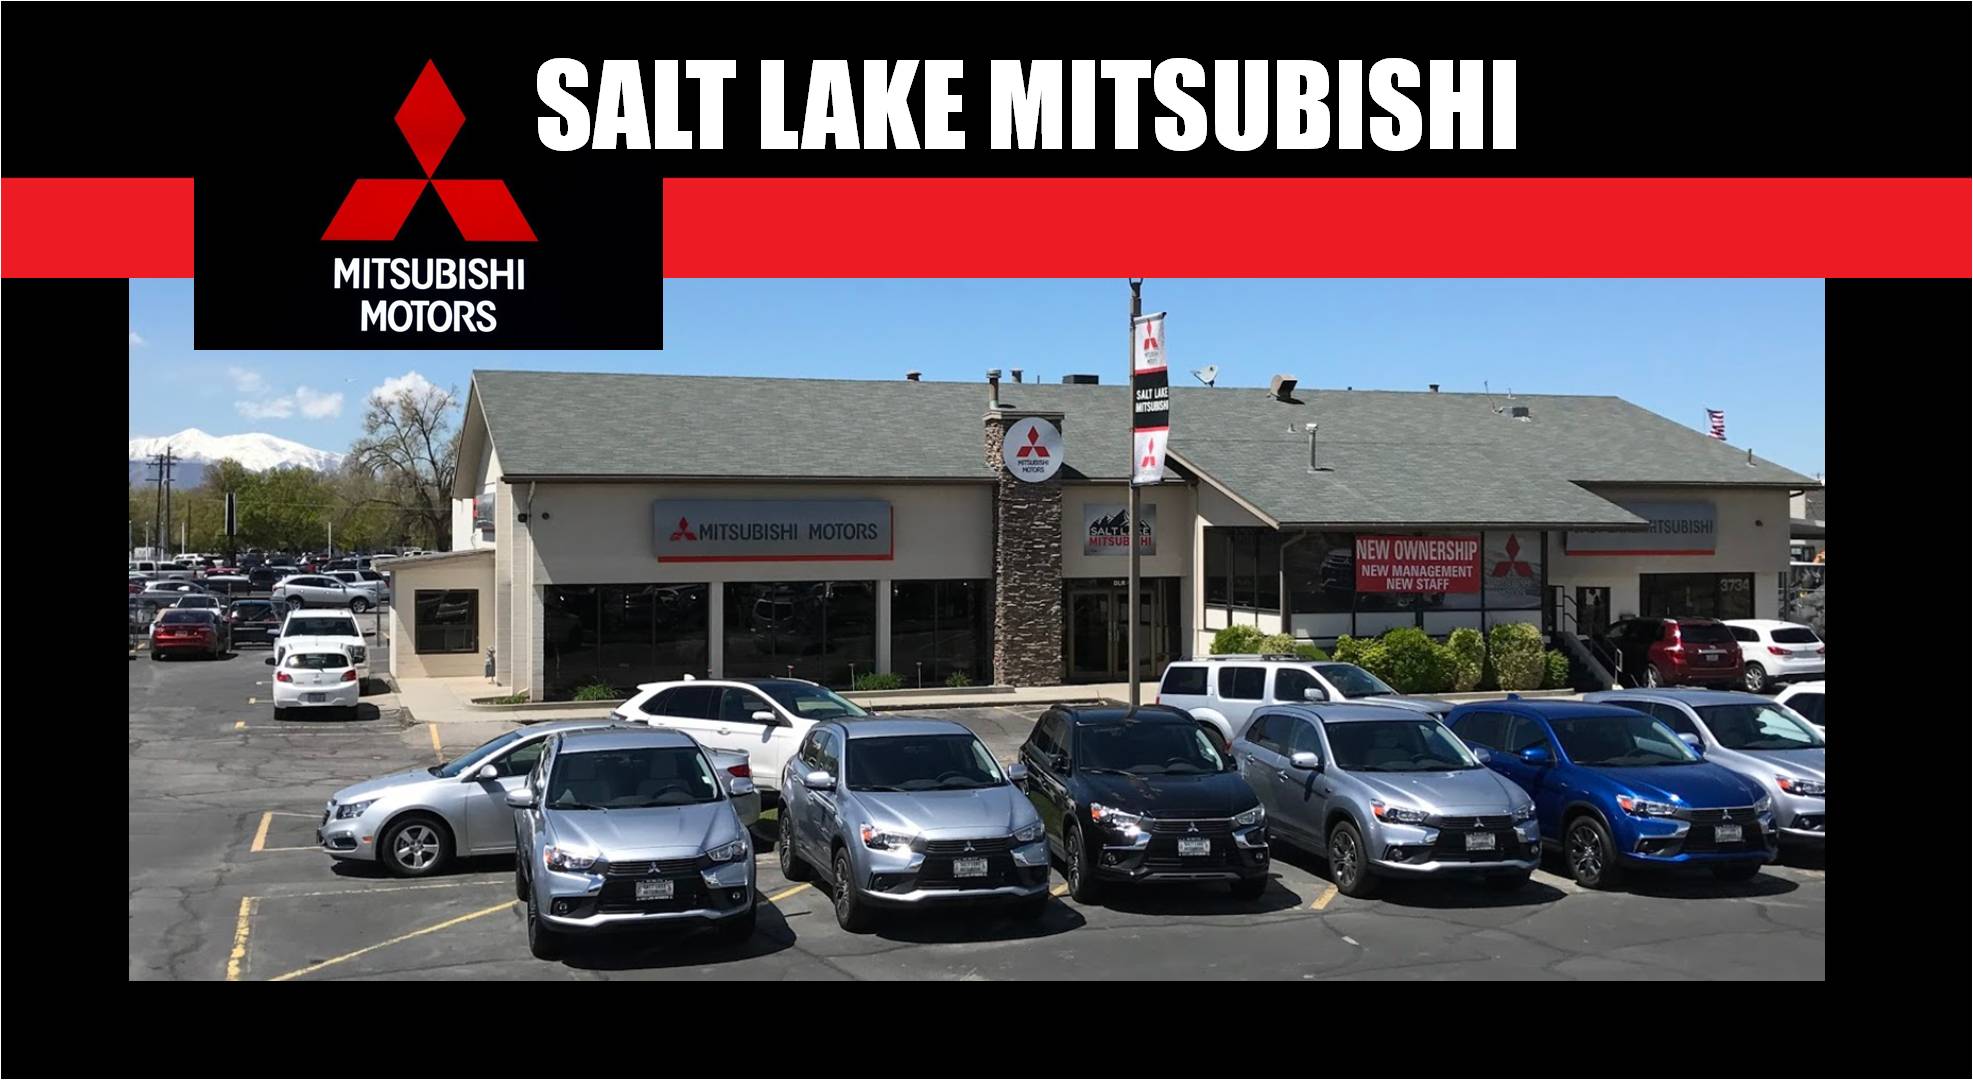 Salt Lake Mitsubishi